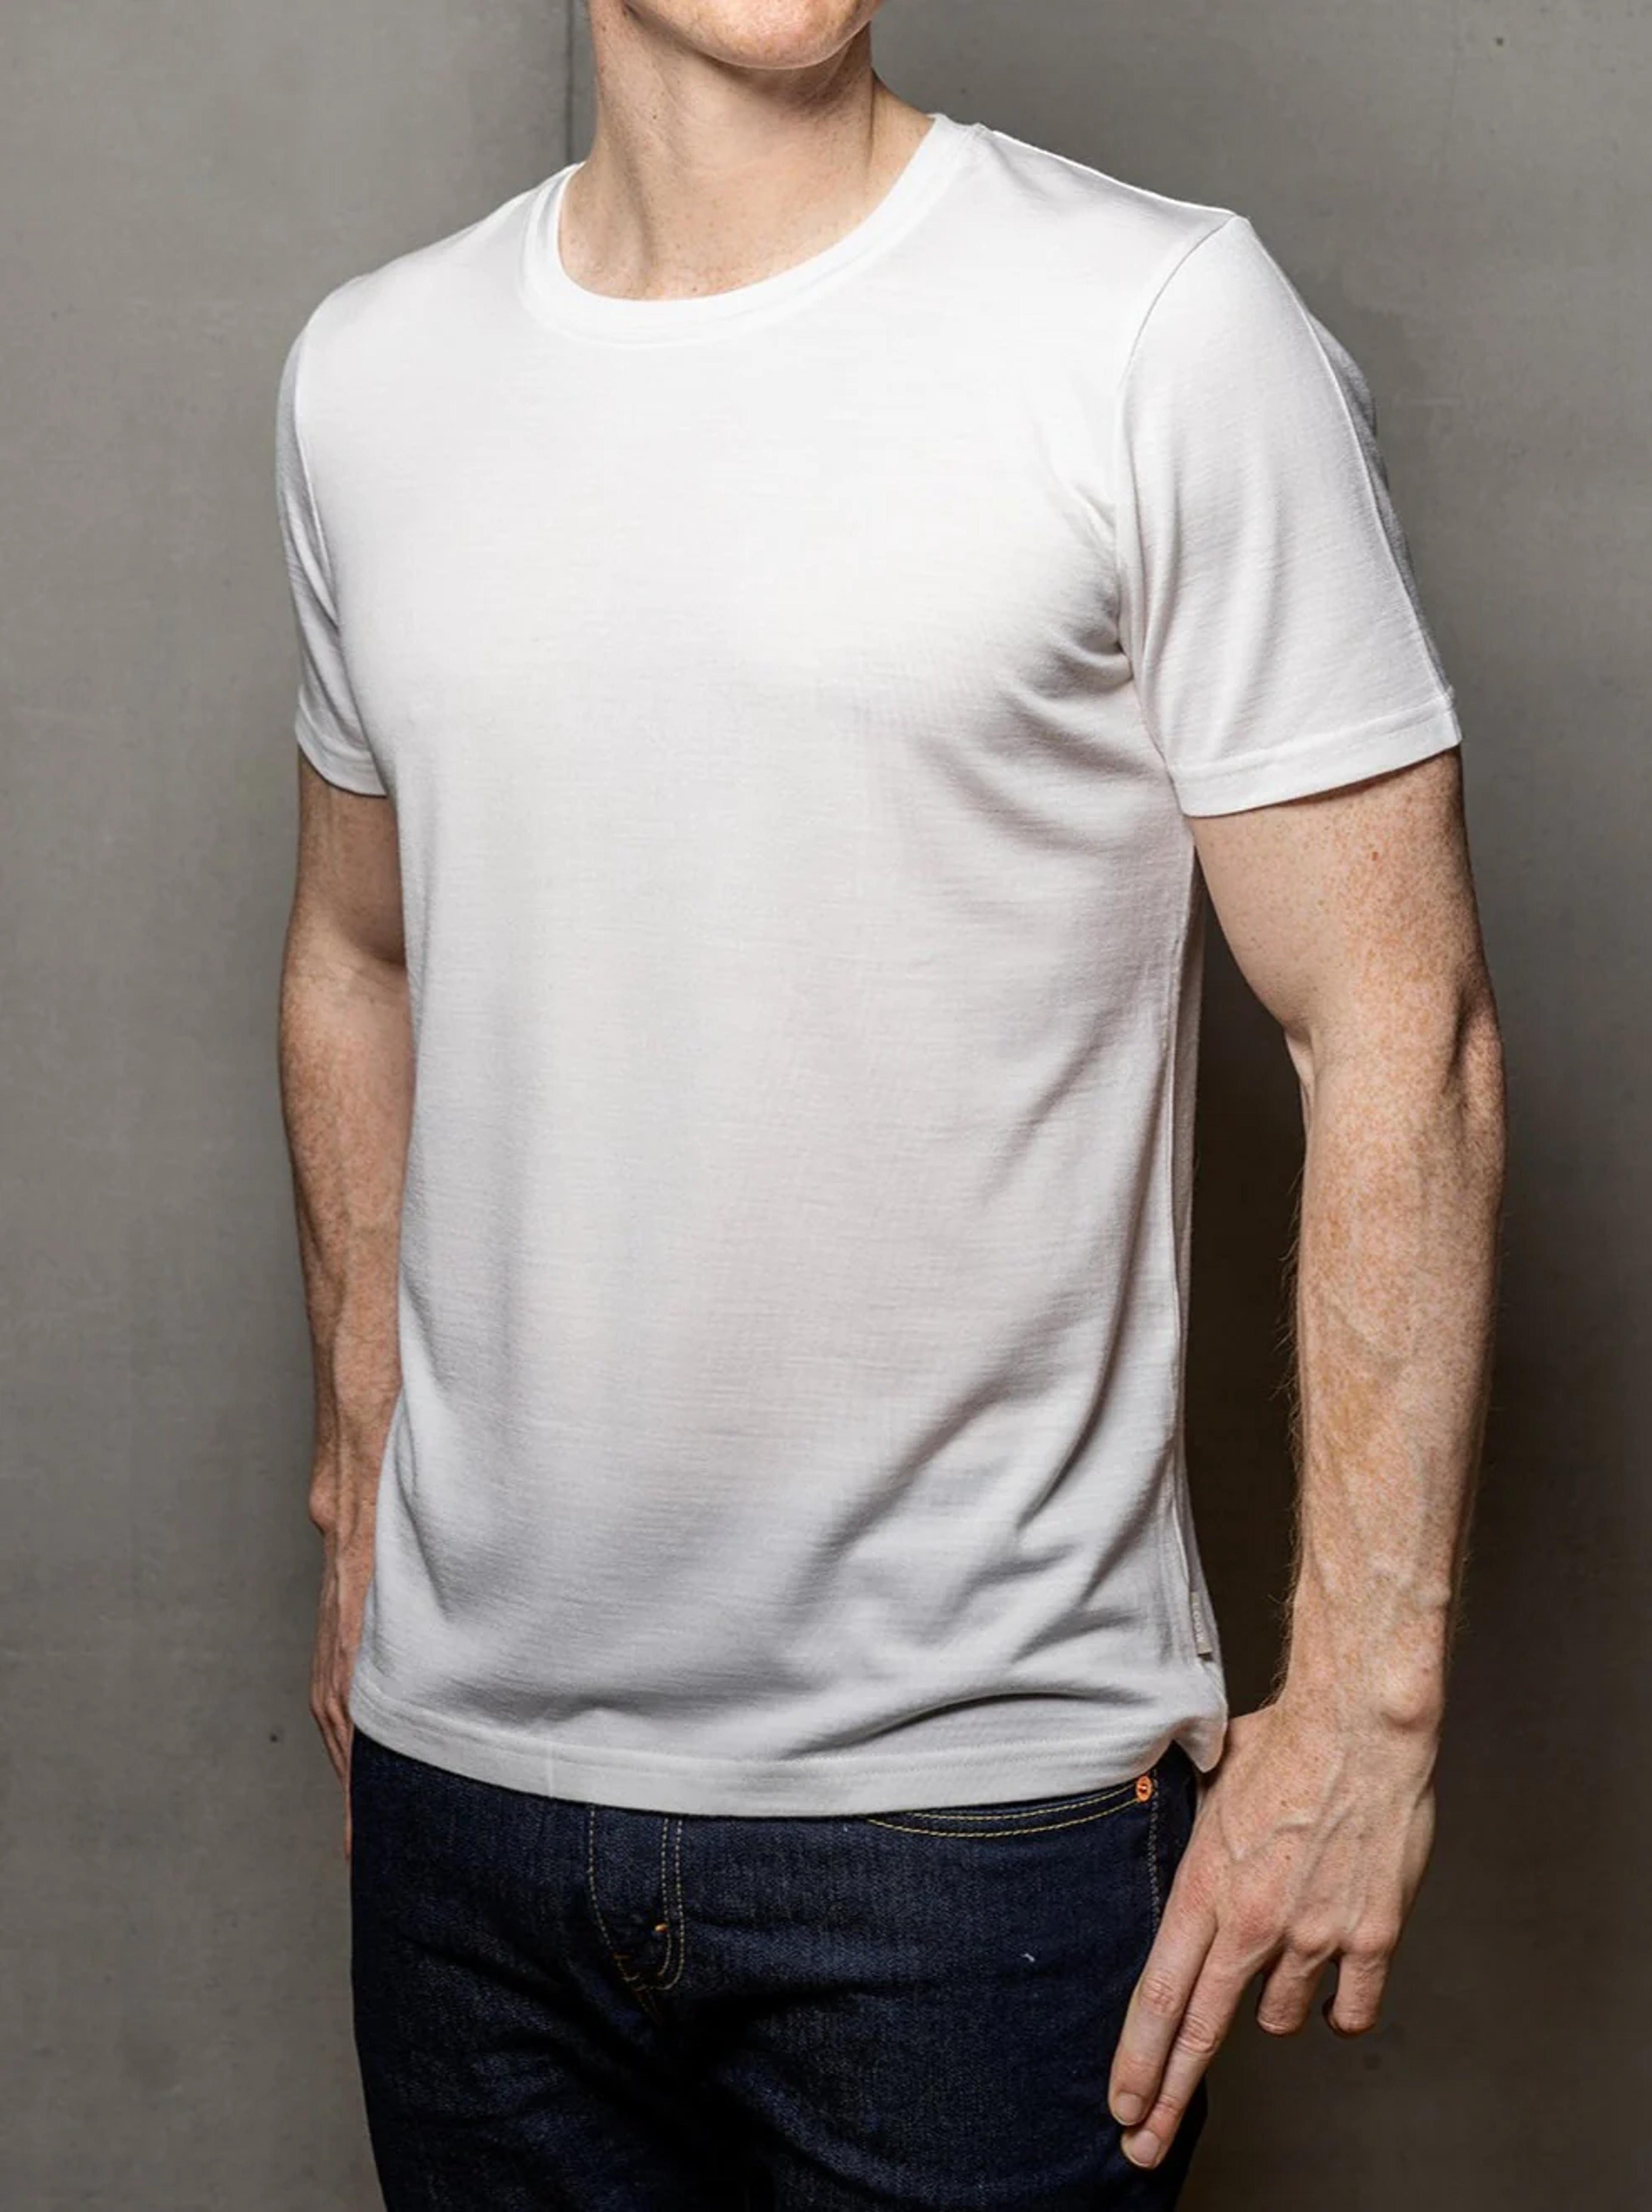 Mens near white superfine merino T-shirt. 100% merino wool - Made in Europe. – LOOW